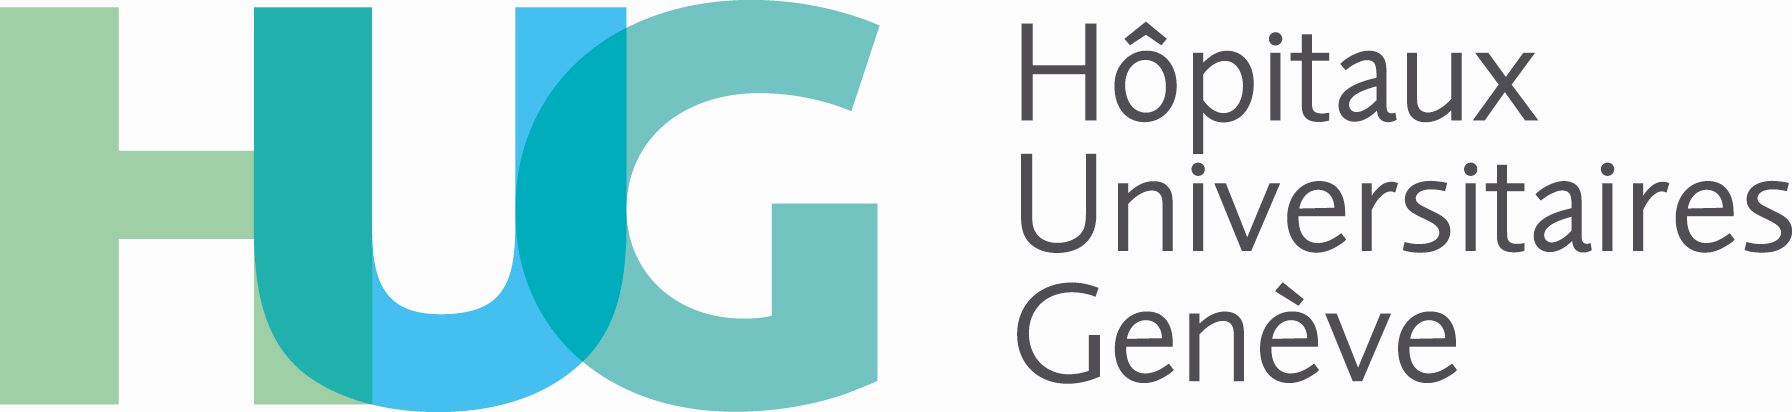 Hospitaux Universitaires Geneve logo